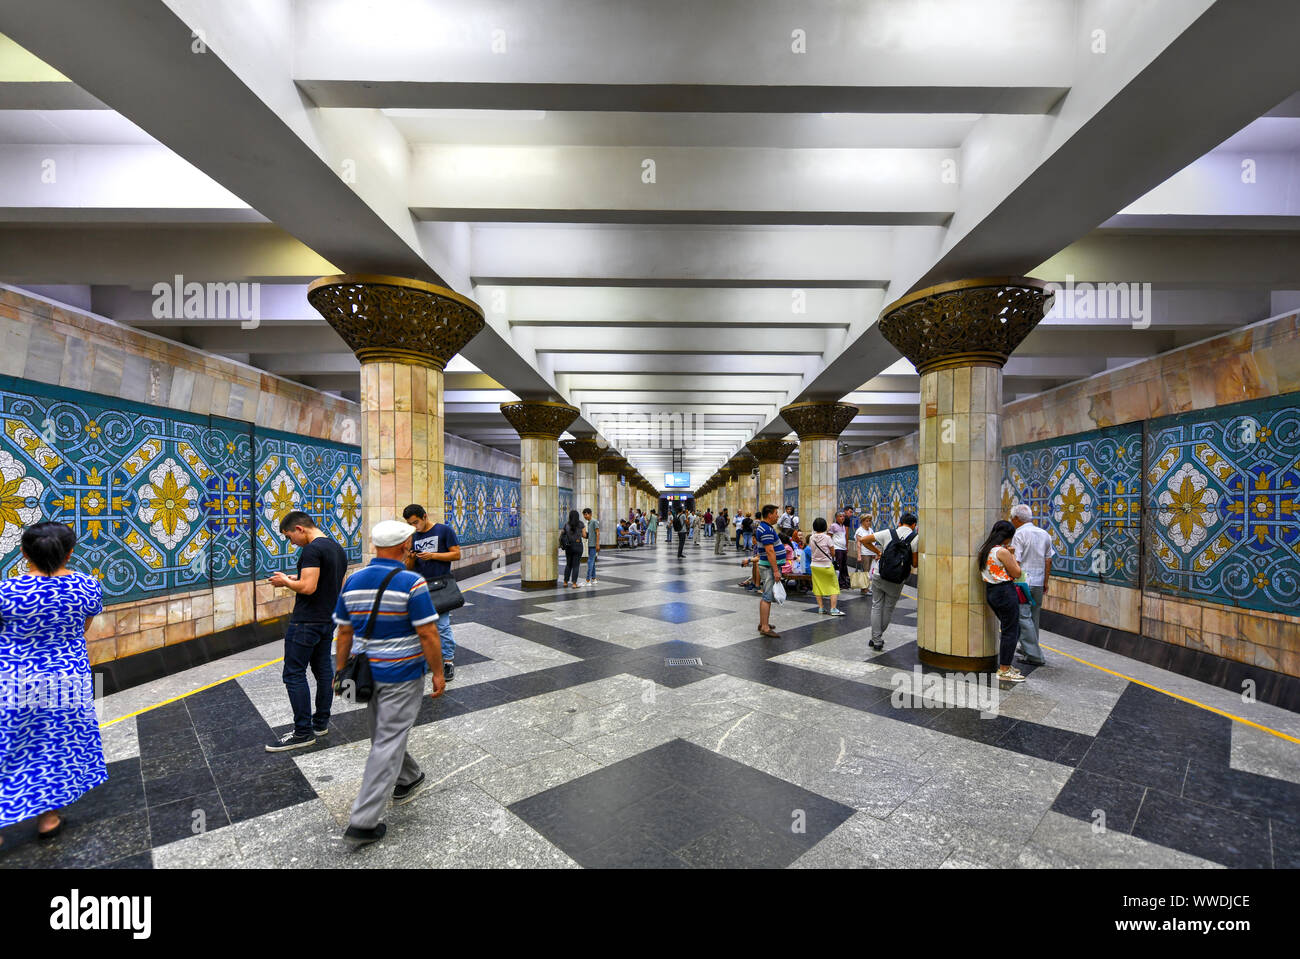 Tachkent, Ouzbékistan - Juillet 8, 2019 : Alisher Navoiy est une station du métro de Tachkent sur Oʻzbekiston Ligne. Banque D'Images